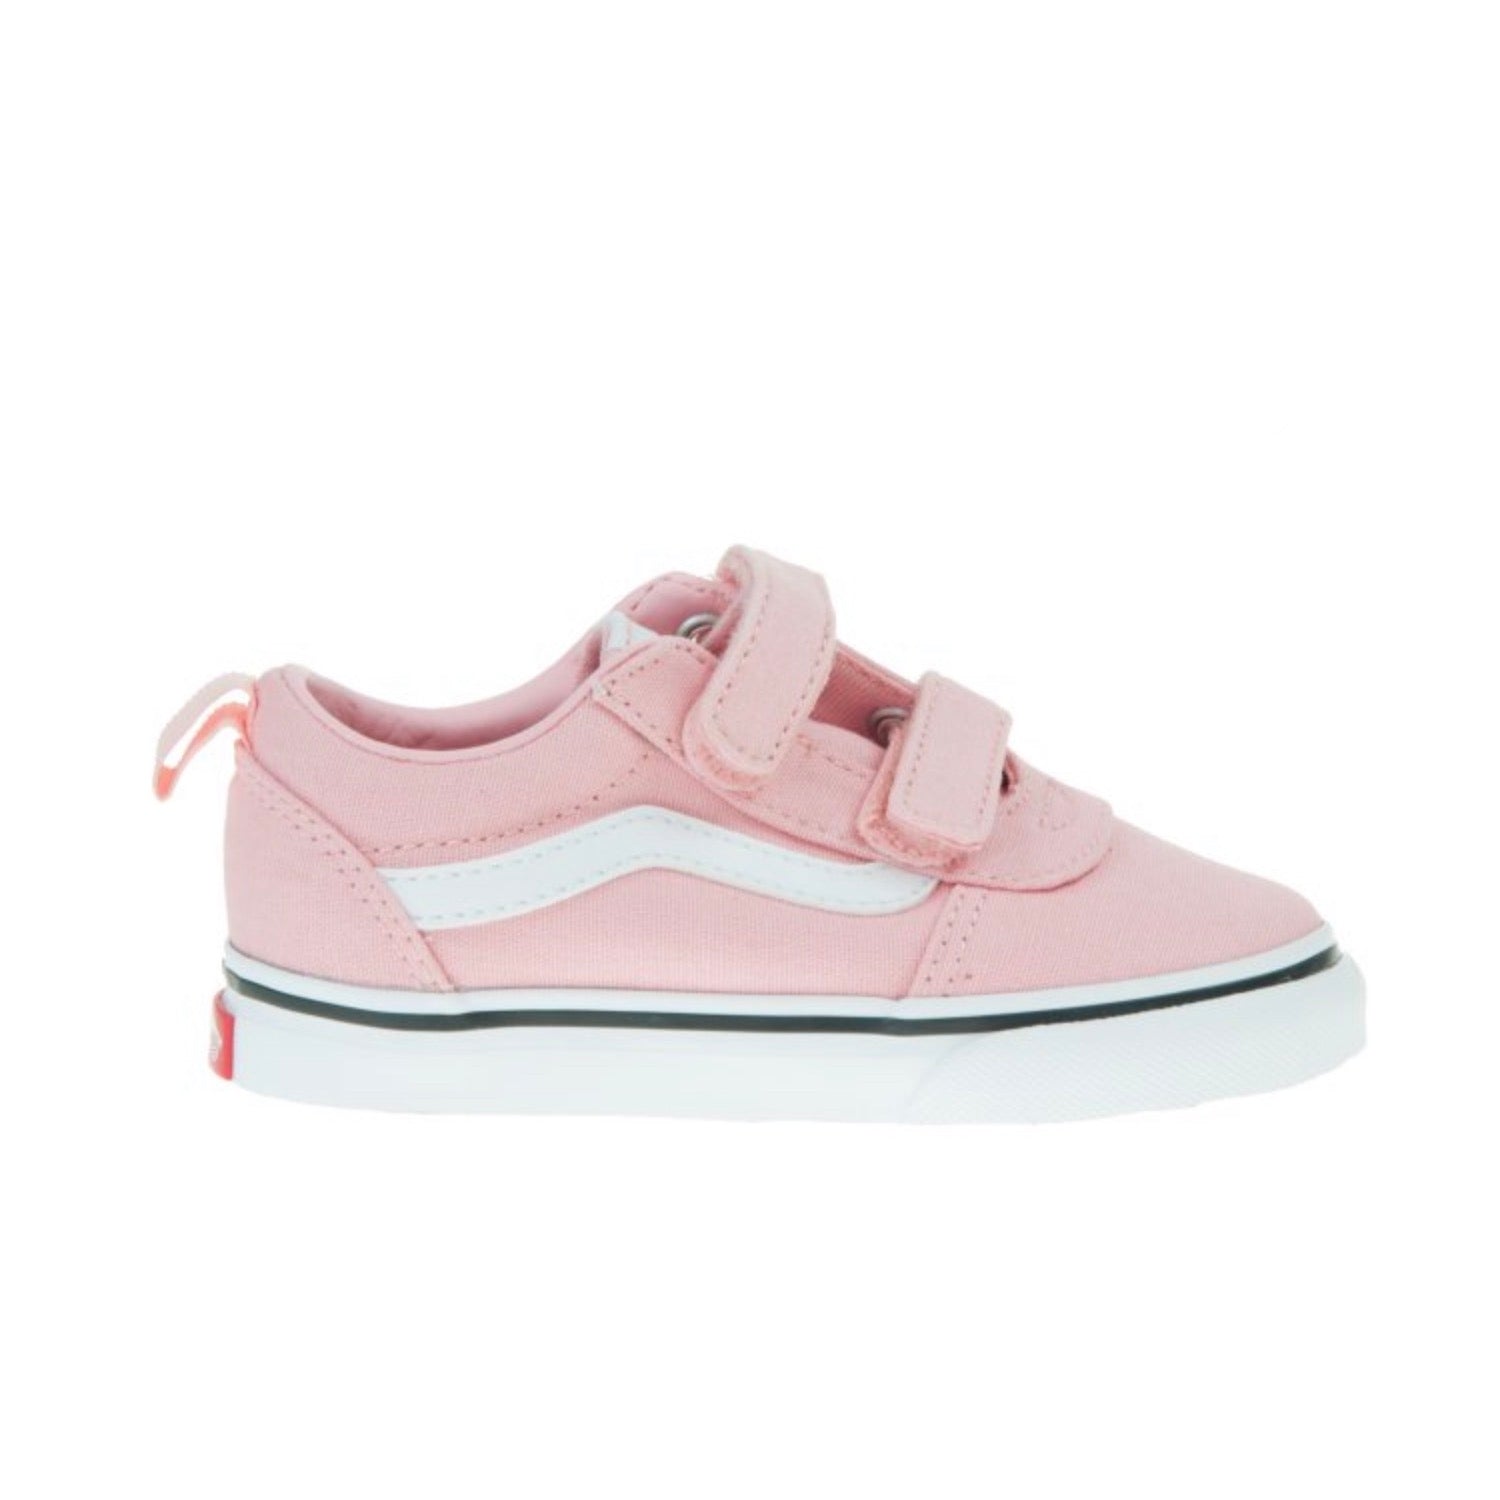 Vans Toddler Ward Pink Vn0a4btf9dx1 Footwear UK4 INFANT / Pink,UK5 INFANT / Pink,UK6 INFANT / Pink,UK7 INFANT / Pink,UK8 INFANT / Pink,UK9 KIDS / Pink